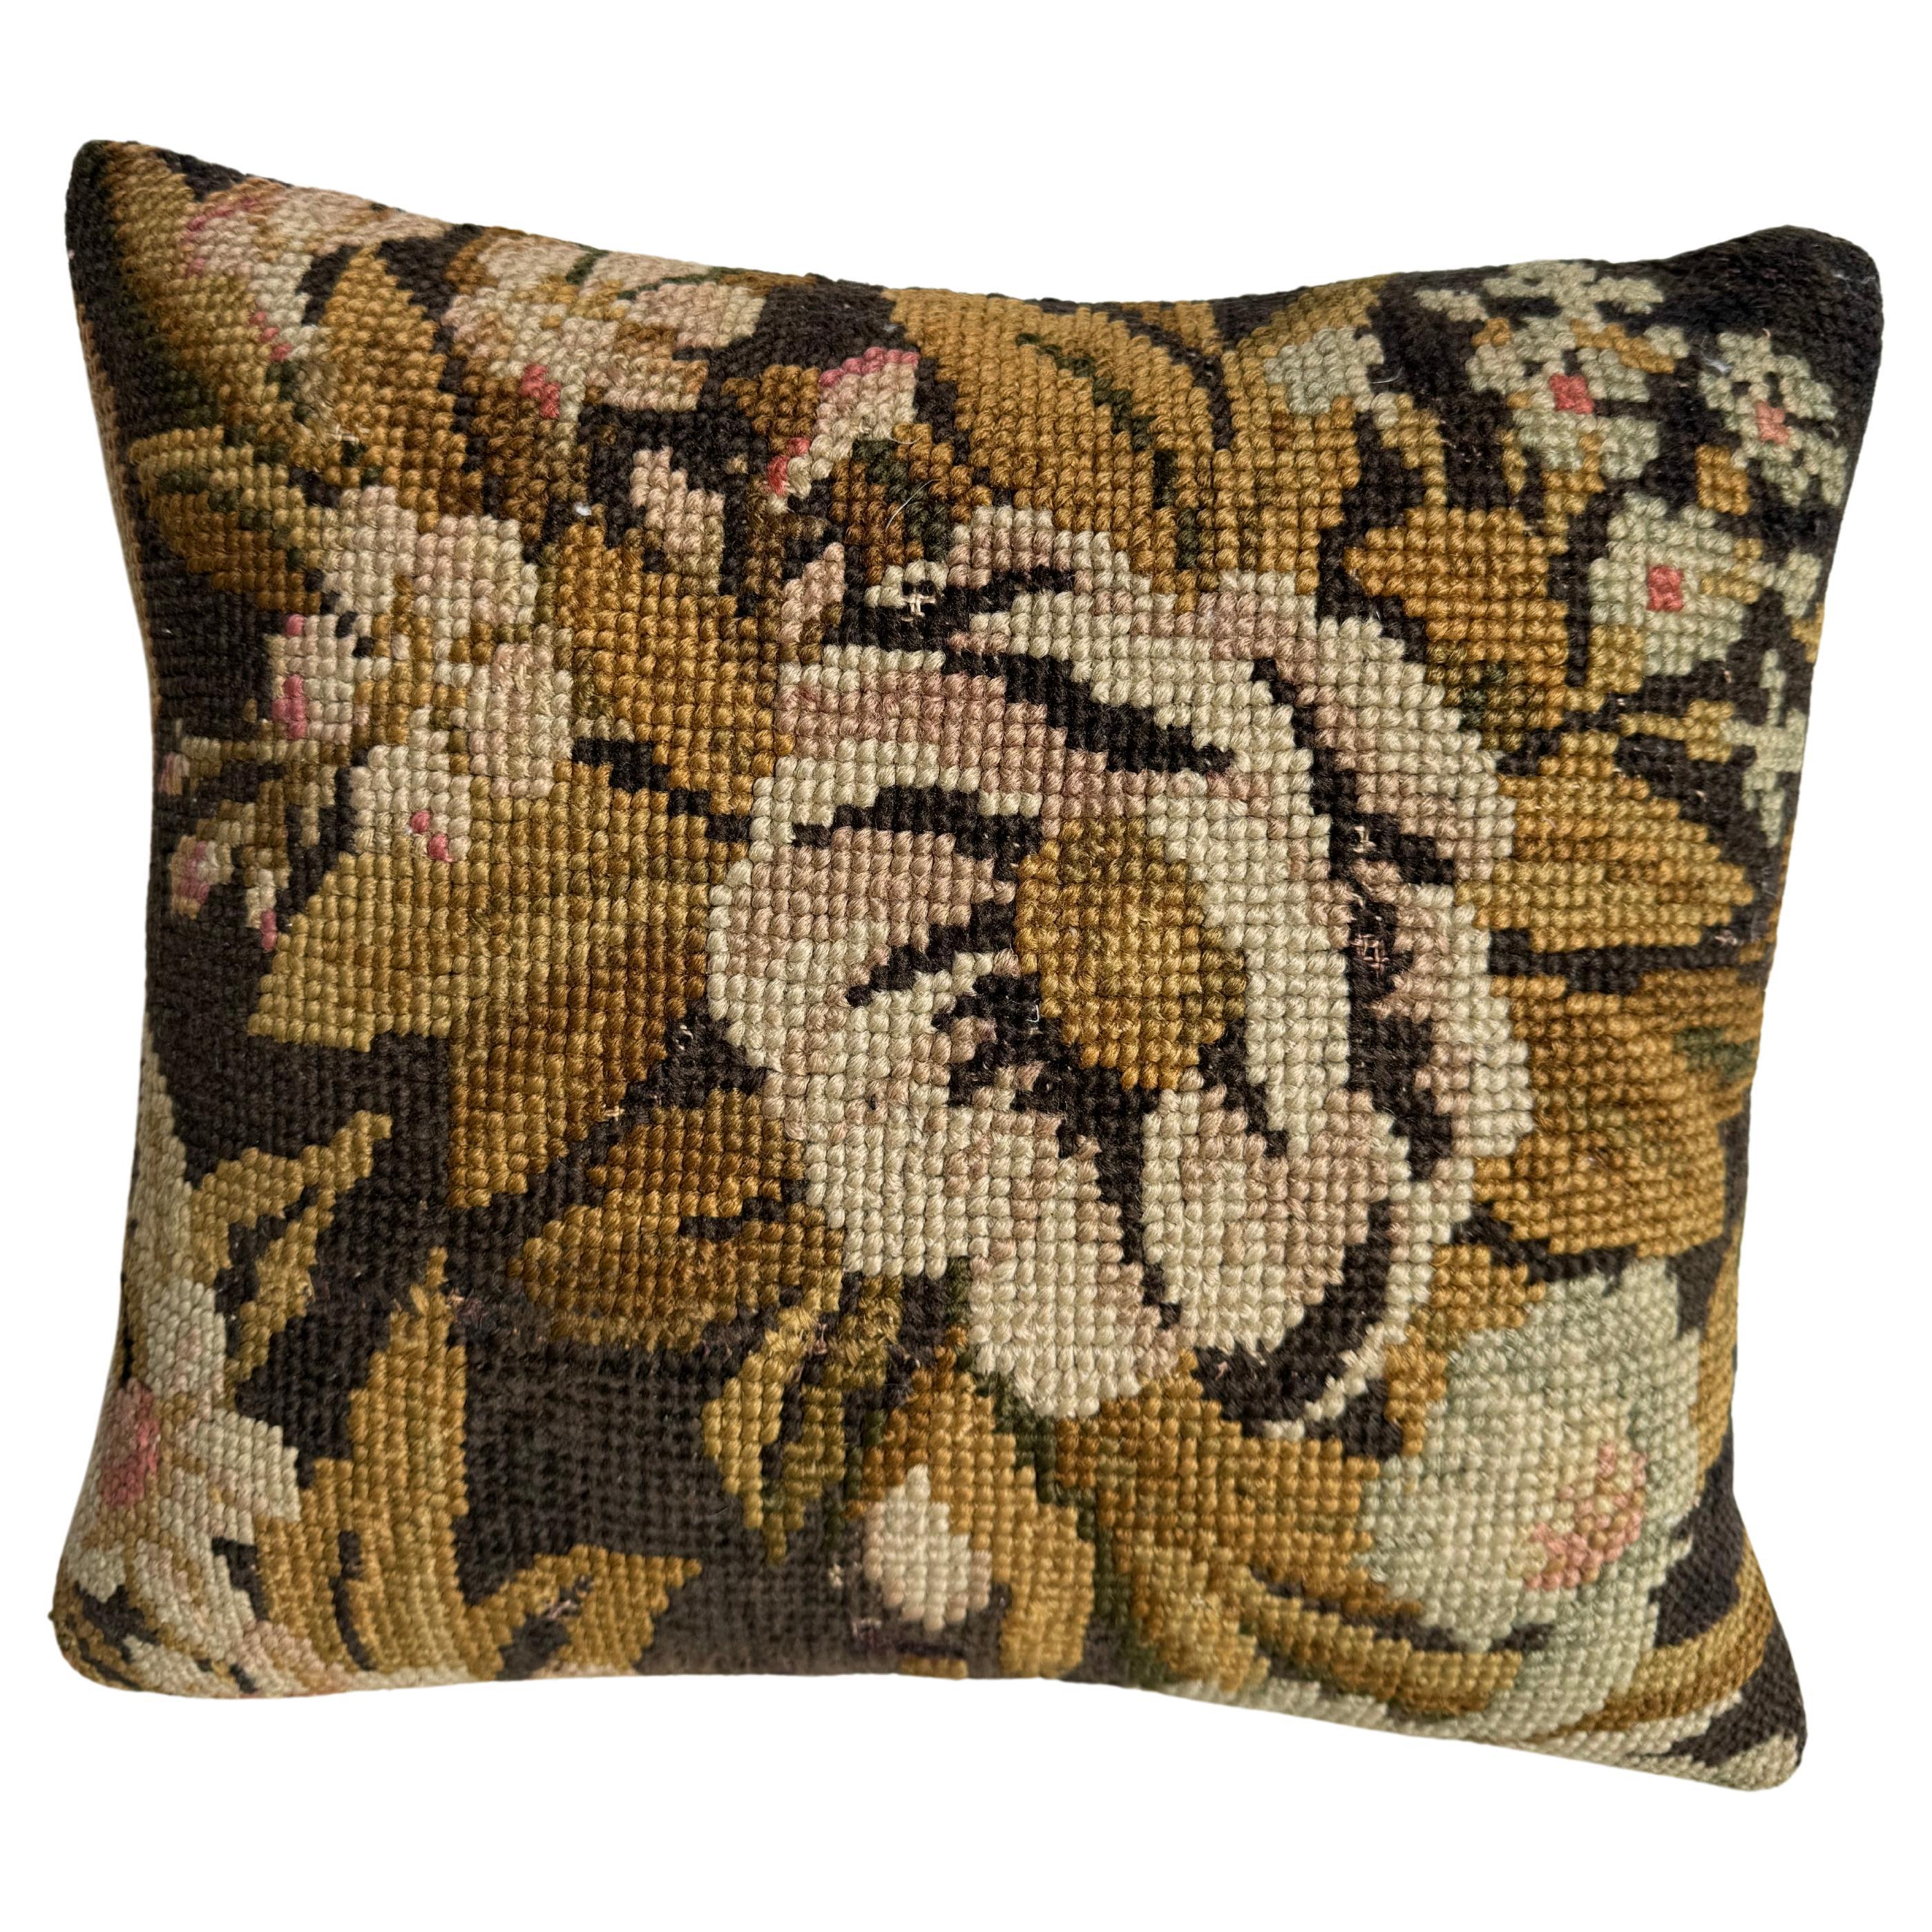 English Needlework Pillow 1850 - 14" x 13"